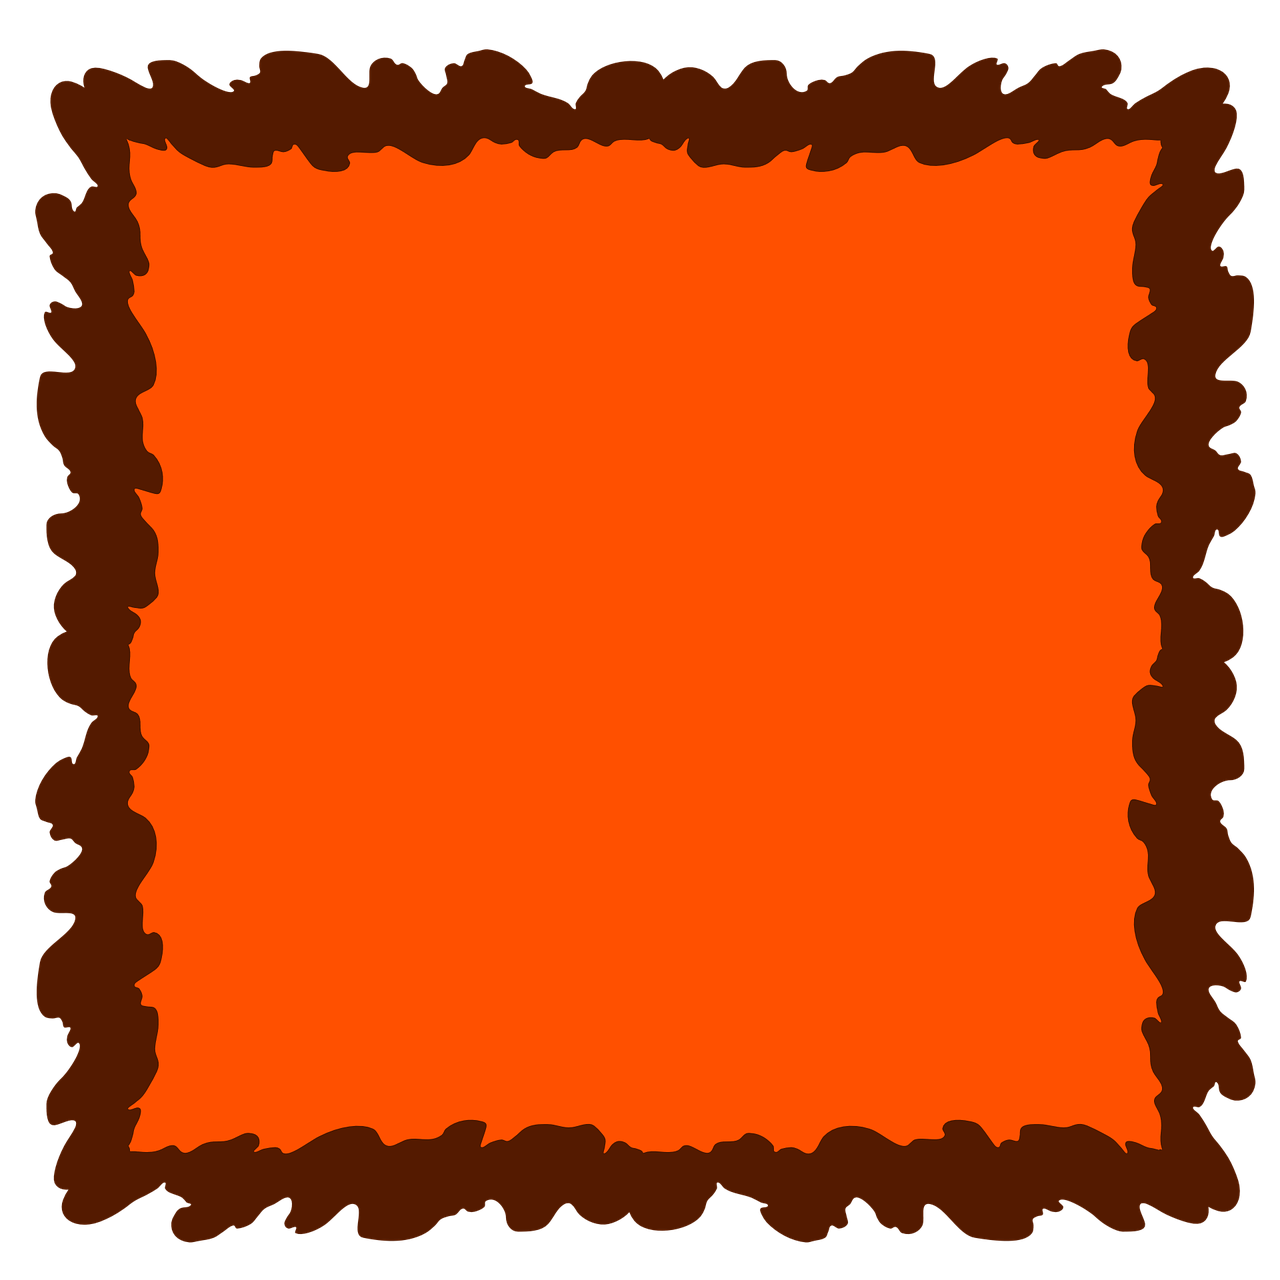 orange frame background free photo